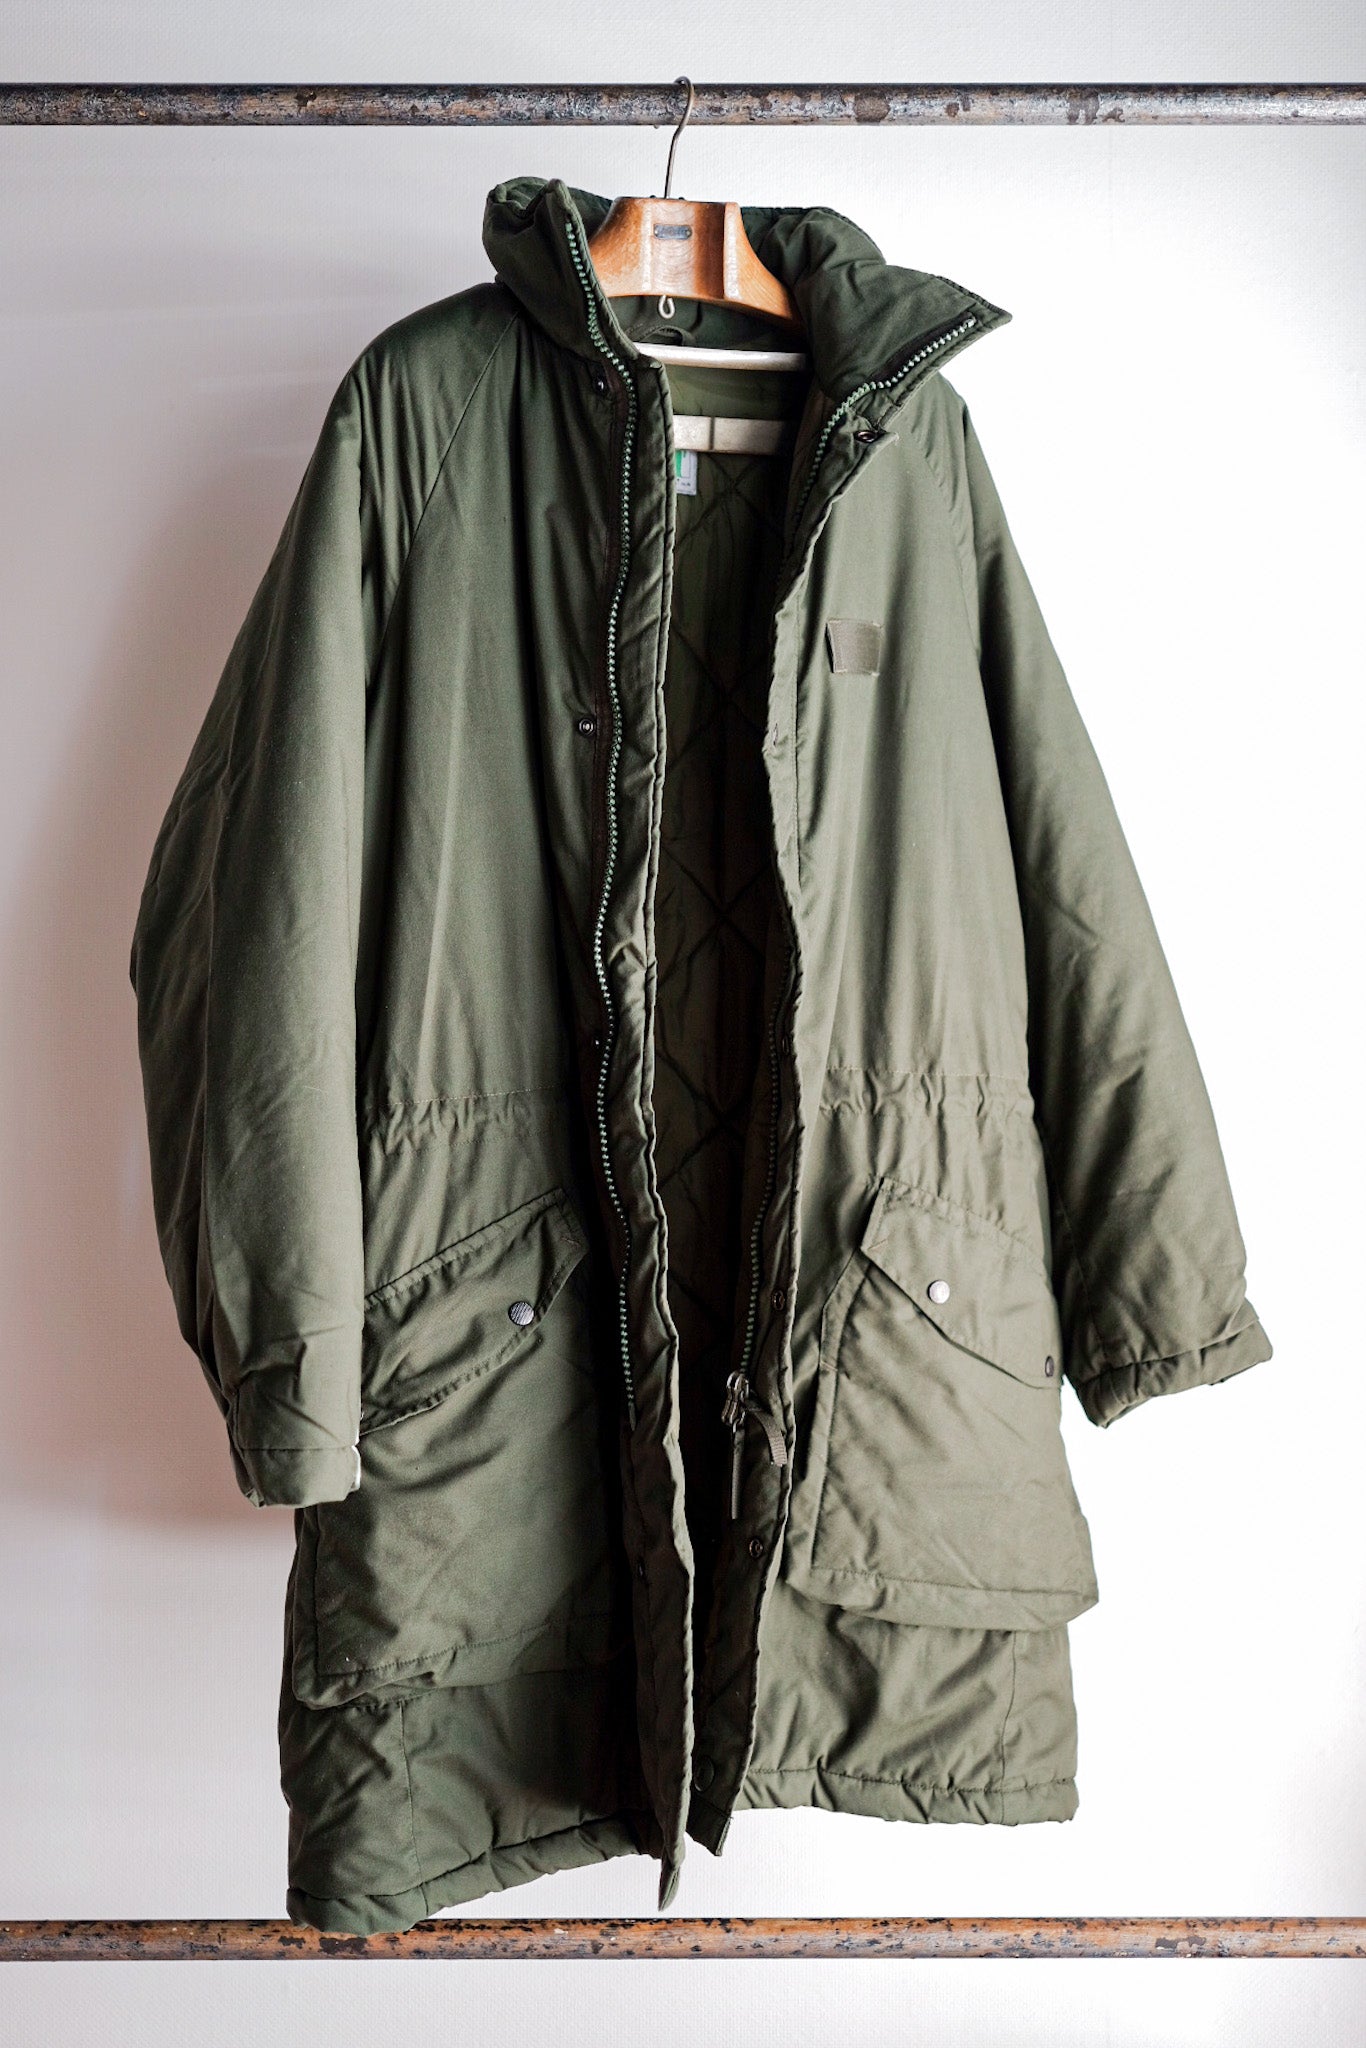 [〜90年代]瑞典軍隊M-90寒冷天氣大衣。190-75